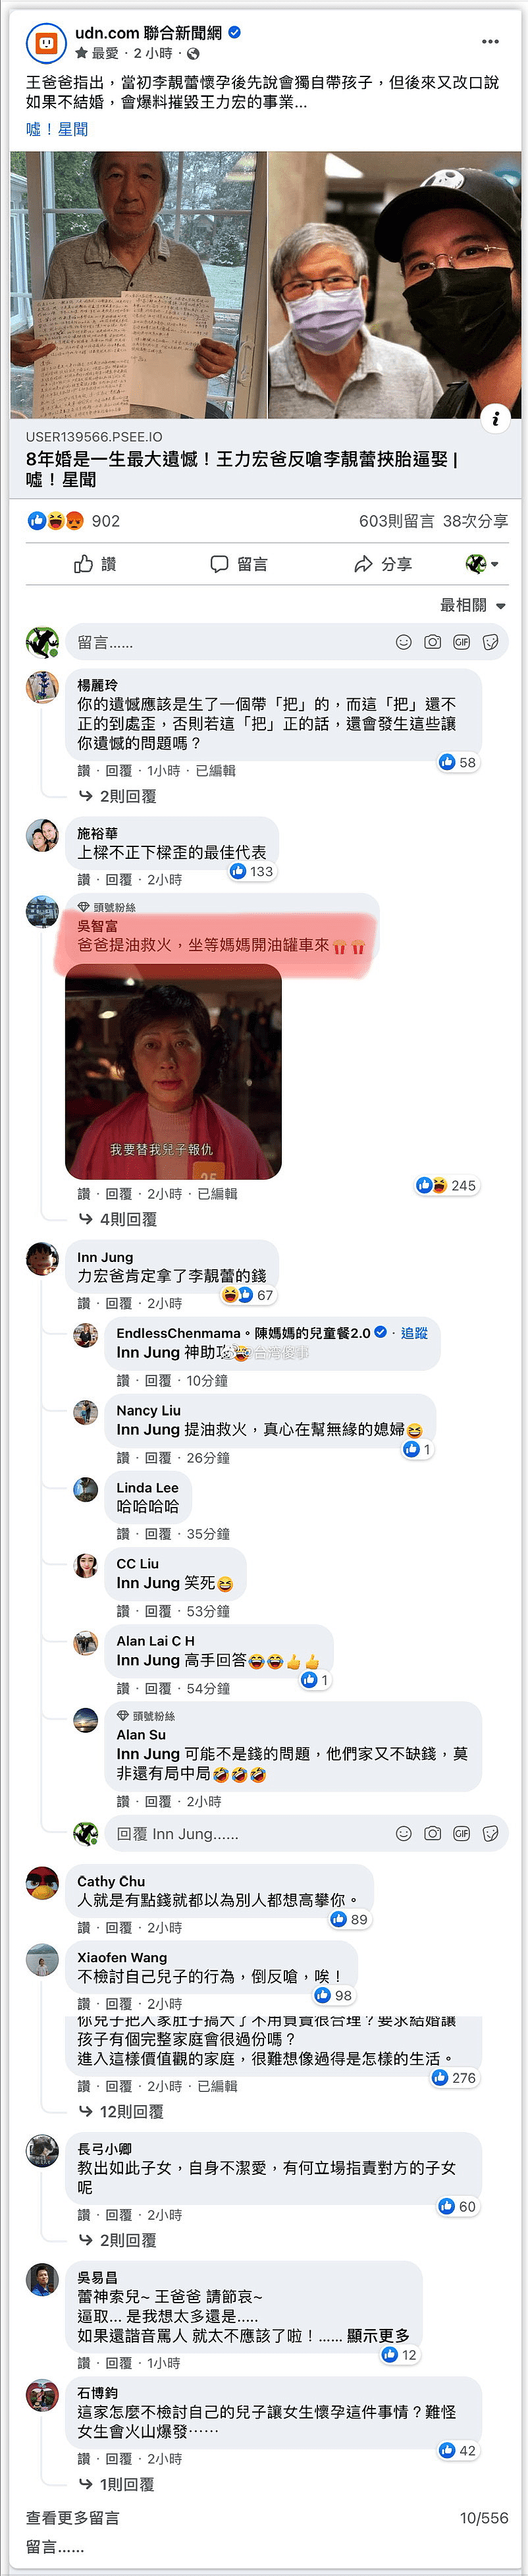 李靓蕾发长文反驳王力宏父亲，台湾网友评论亮点多，调侃爸爸是帮倒忙 - 16